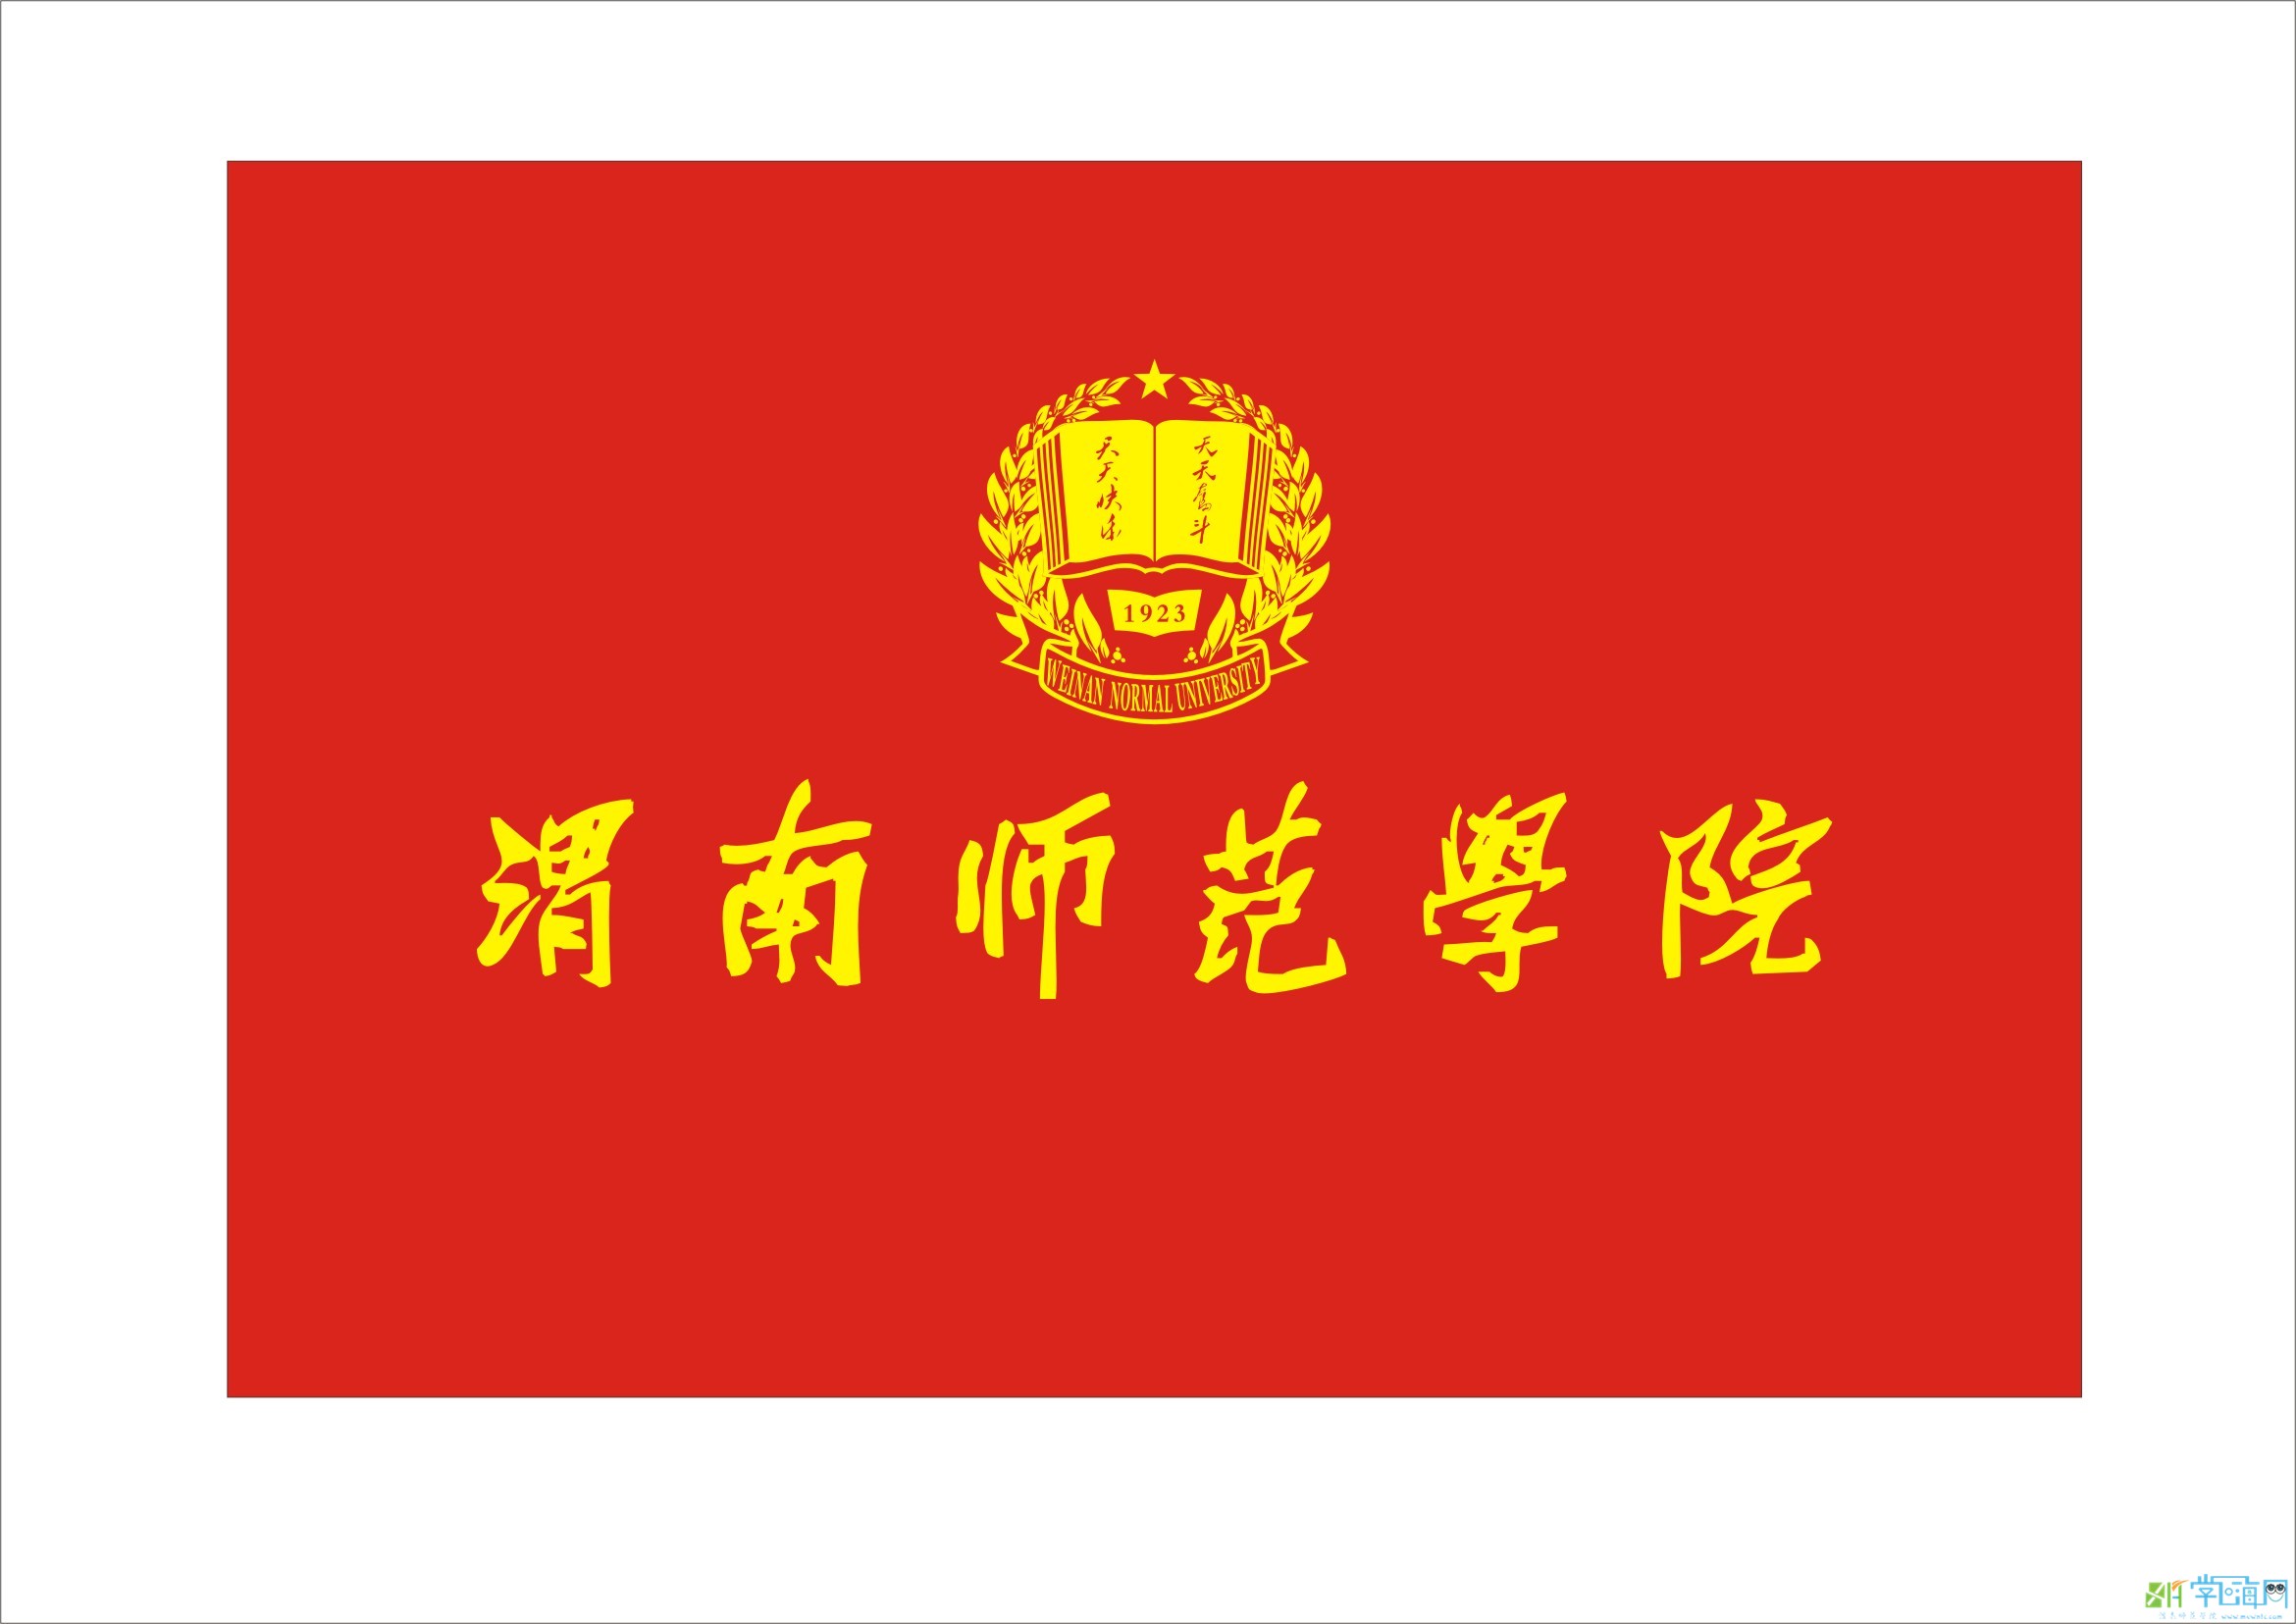 渭南師範學院2013年新版校旗